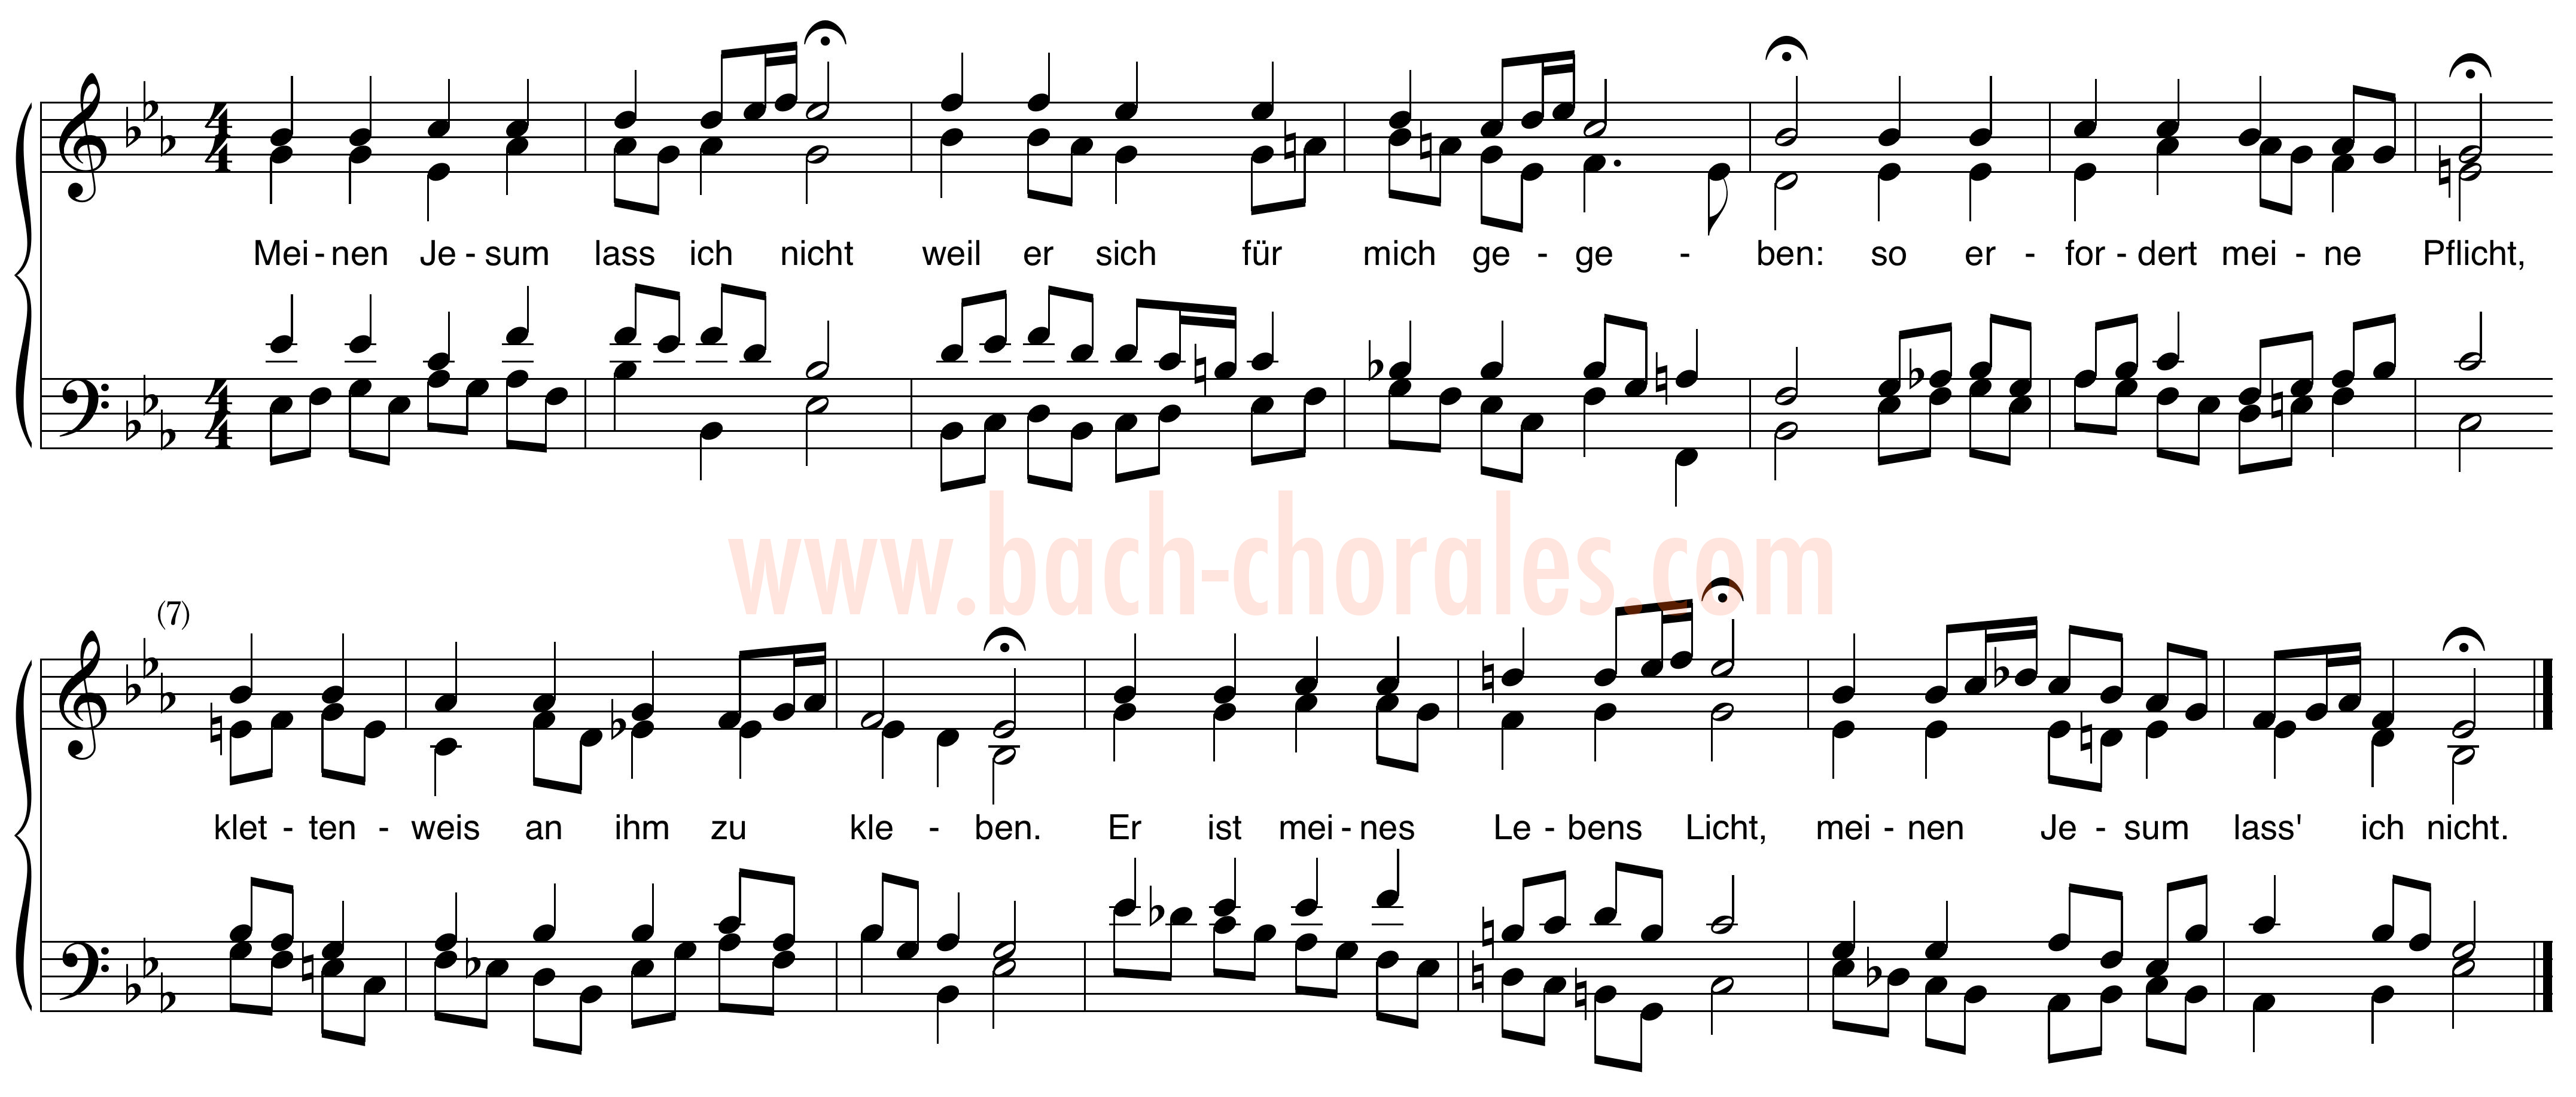 notenbeeld BWV 380 op https://www.bach-chorales.com/